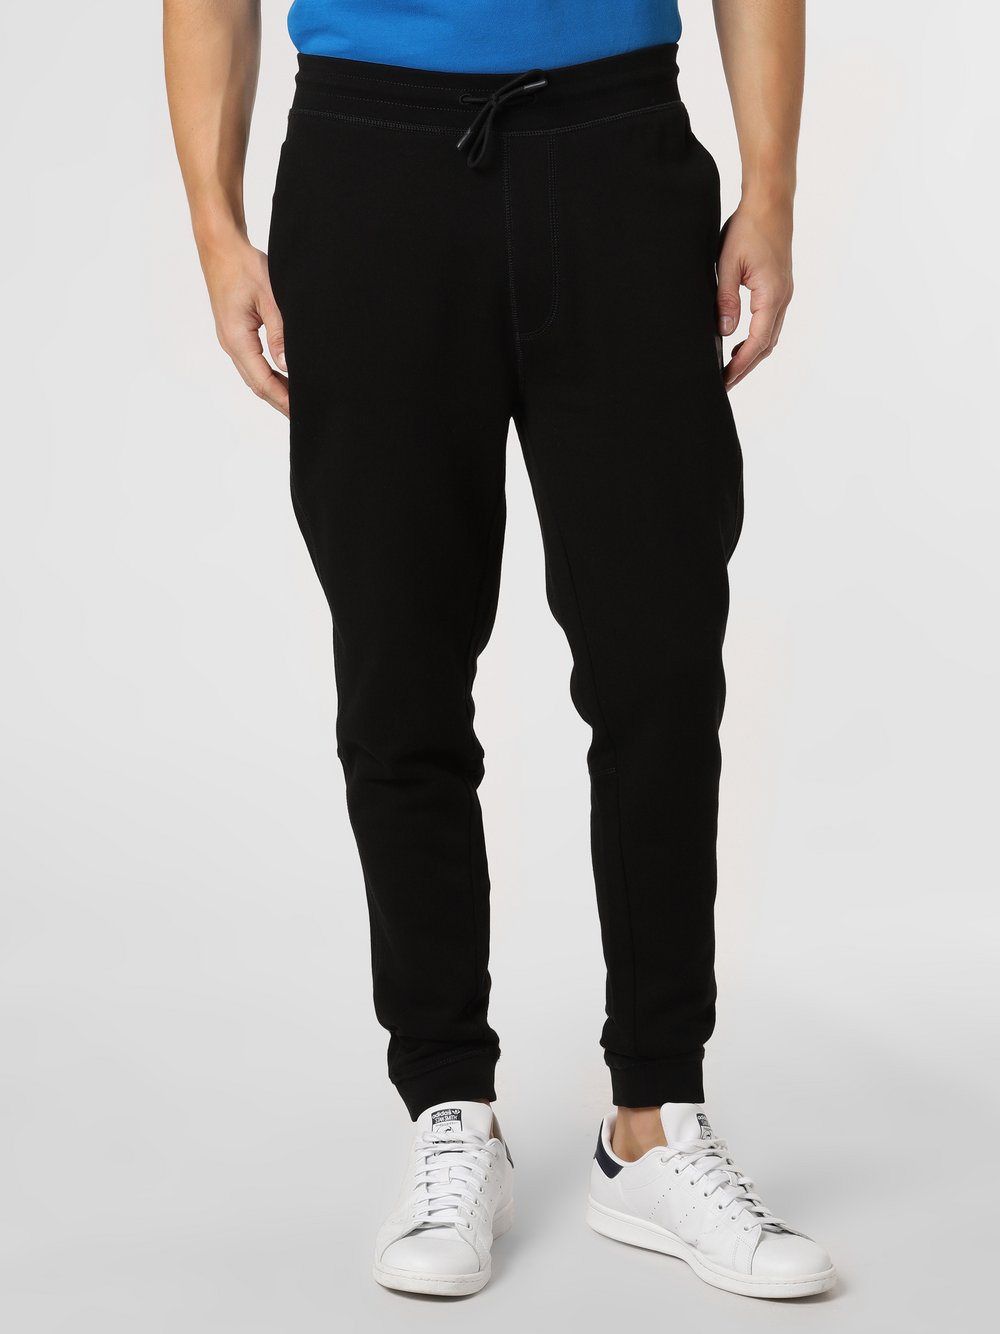 BOSS Casual - Spodnie dresowe męskie – Sestart 1, czarny